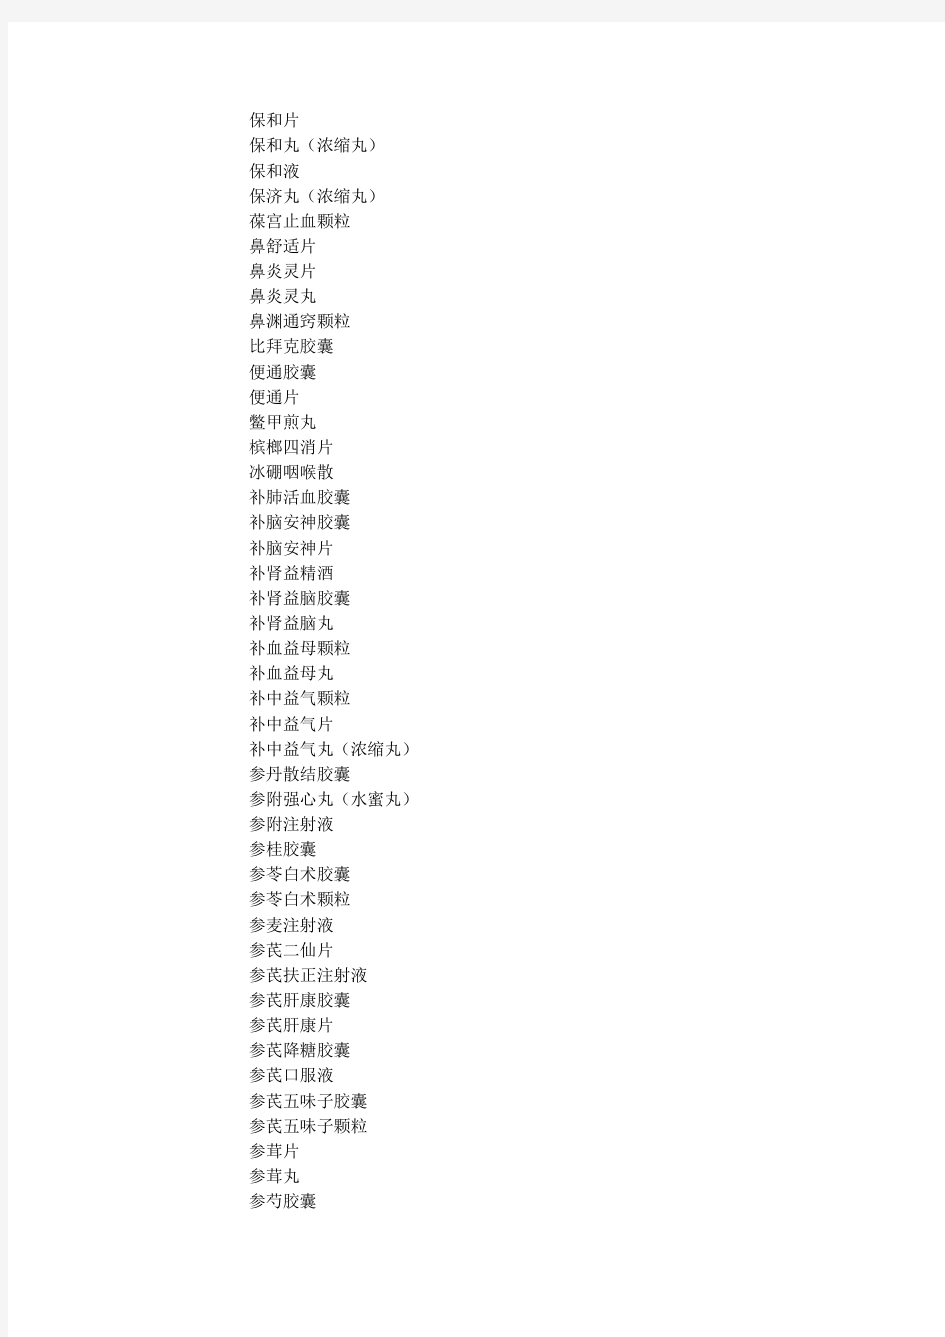 中国药典2015年版拟新增品种名单